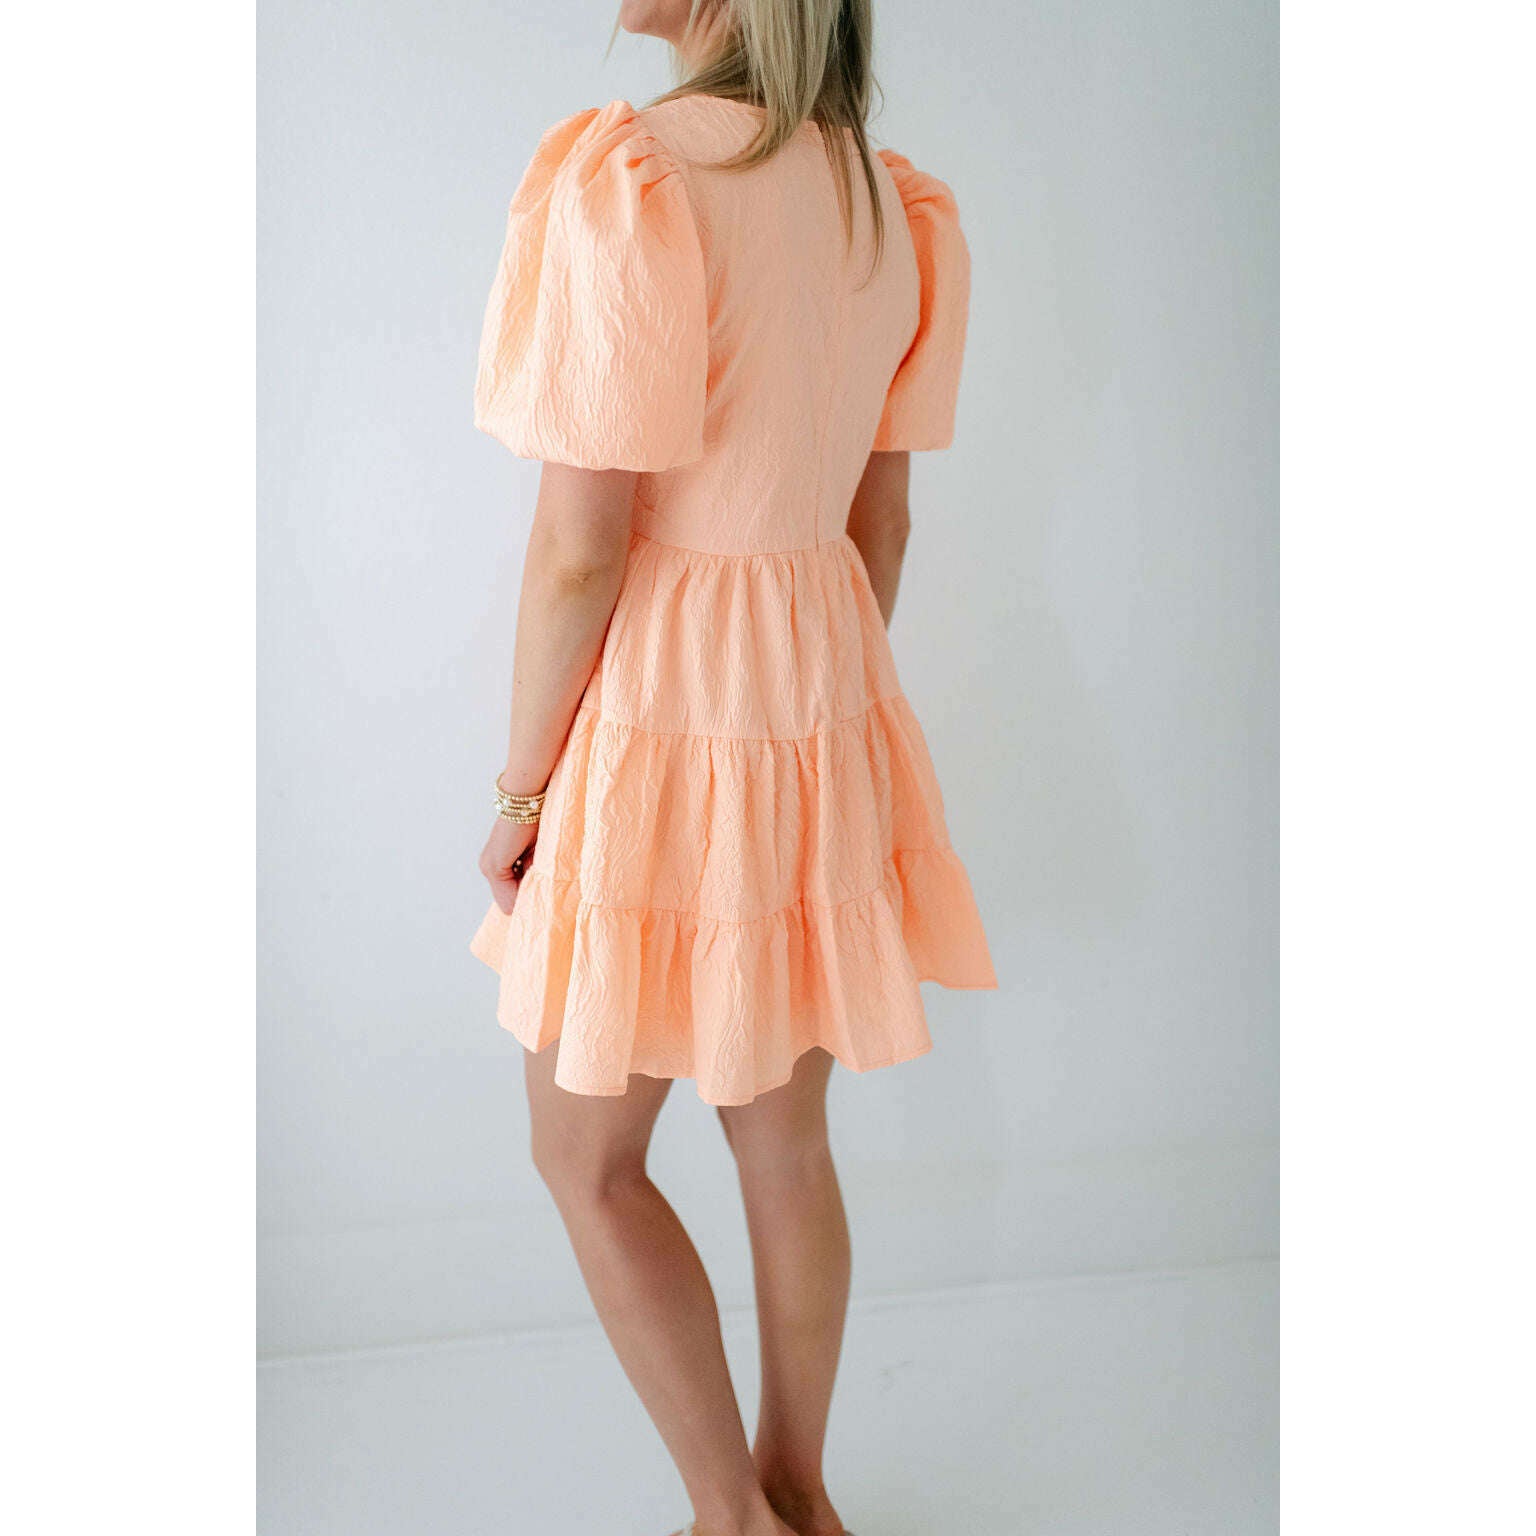 8.28 Boutique:8.28 Boutique,The Paisley Peach Dress,Dress